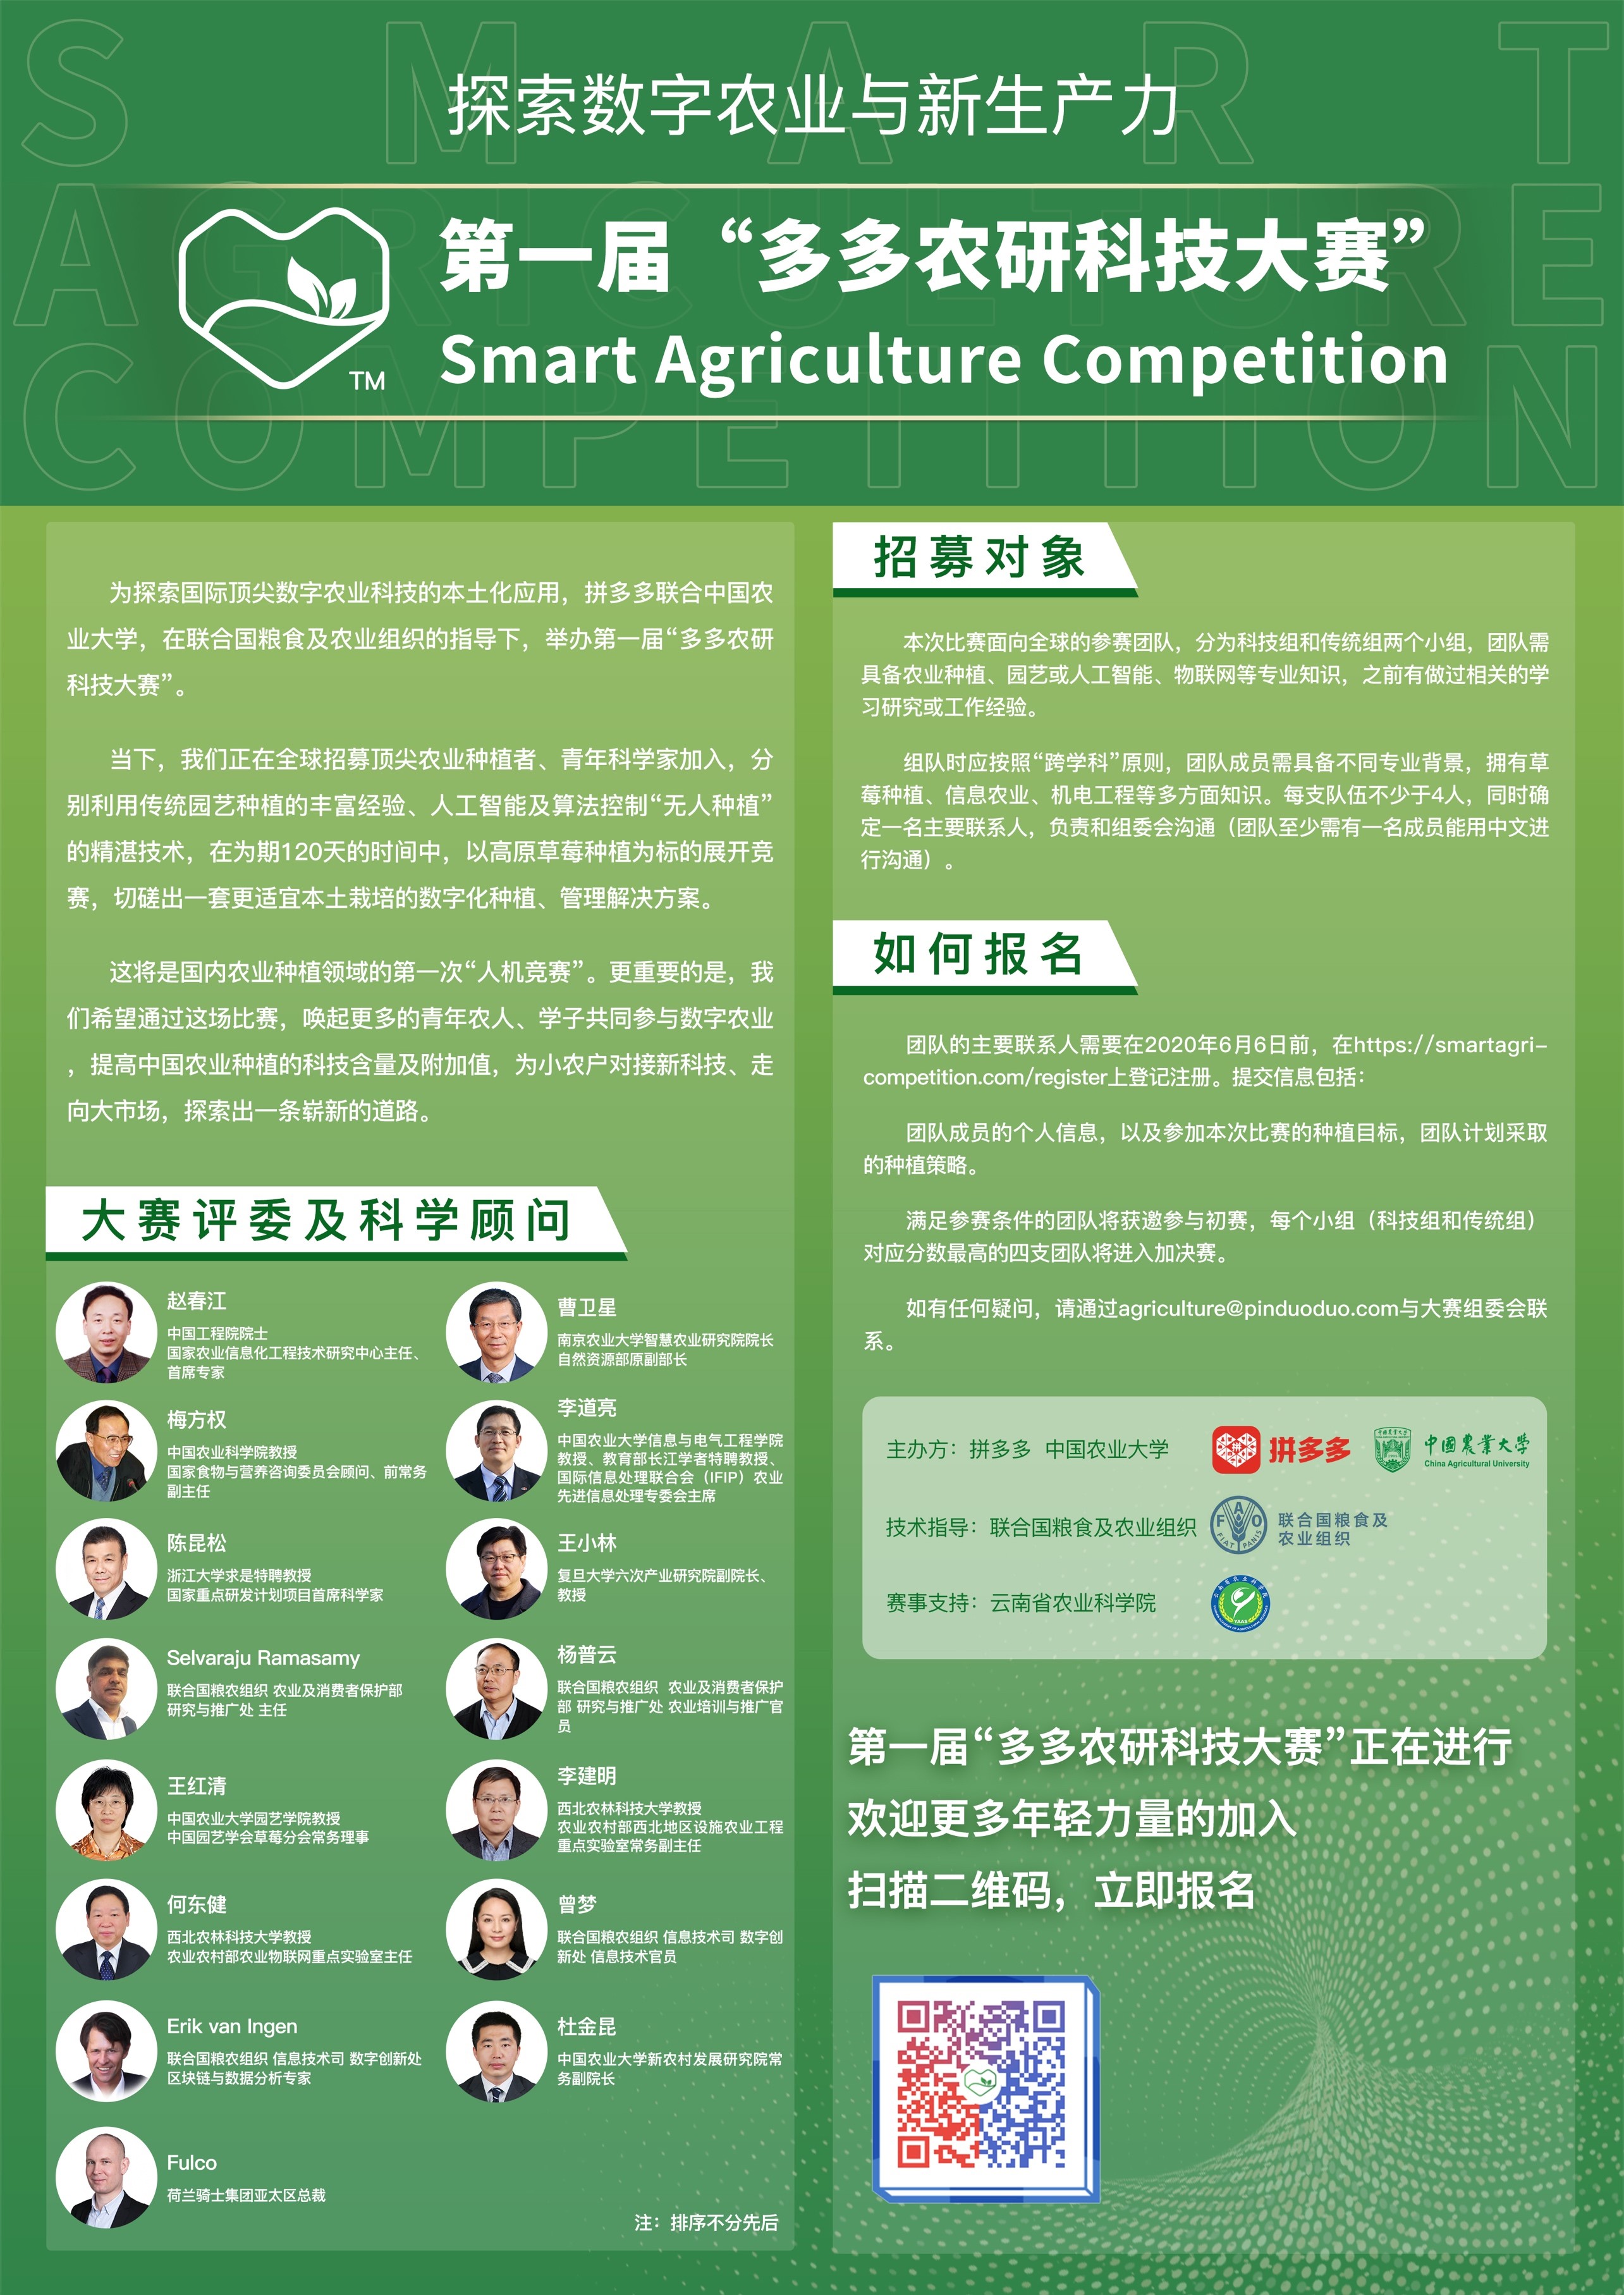 拼多多与中国农业大学联合开启“多多农研科技大赛”_零售_电商之家